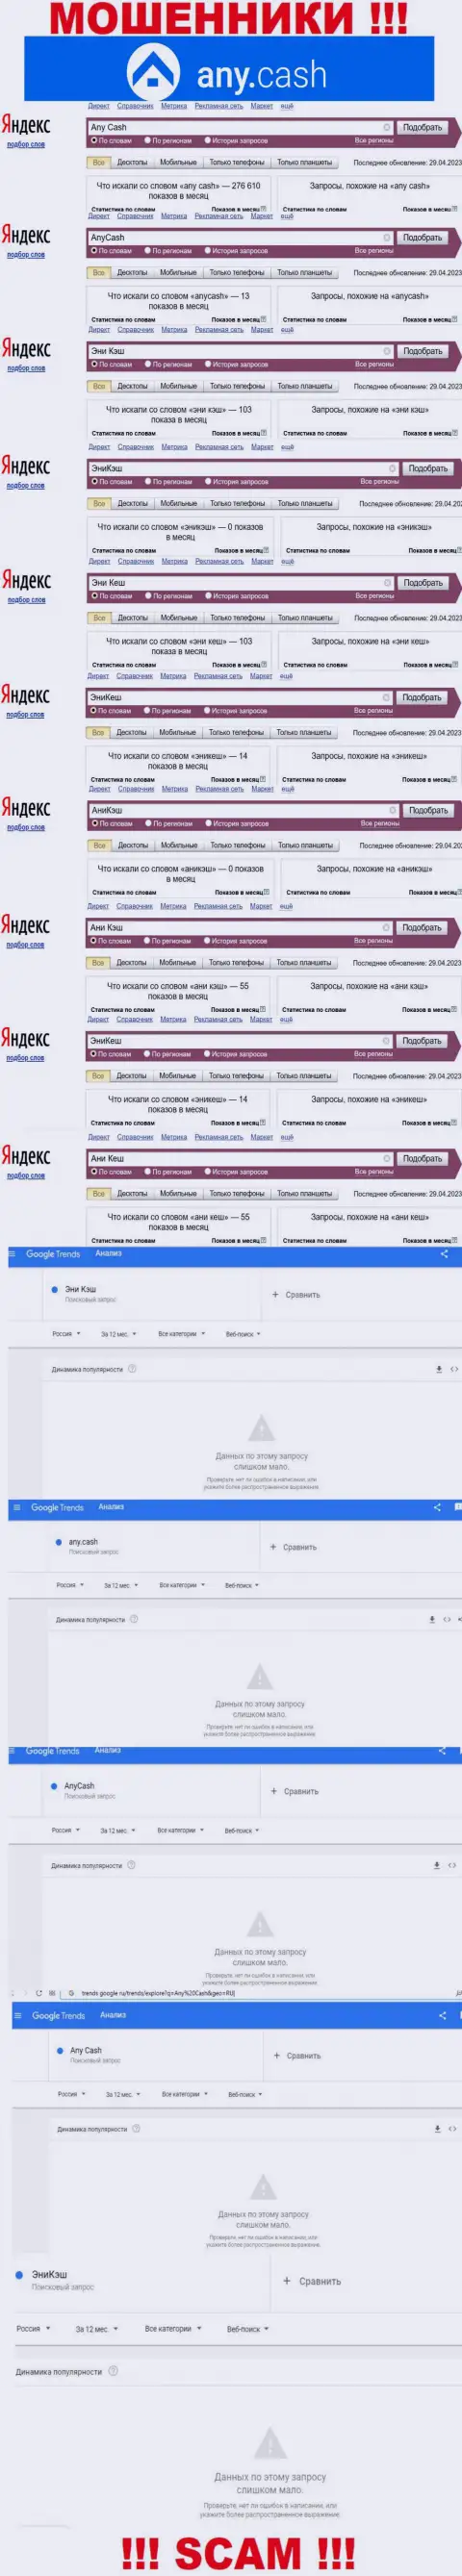 Скрин результата онлайн запросов по жульнической конторе АниКеш